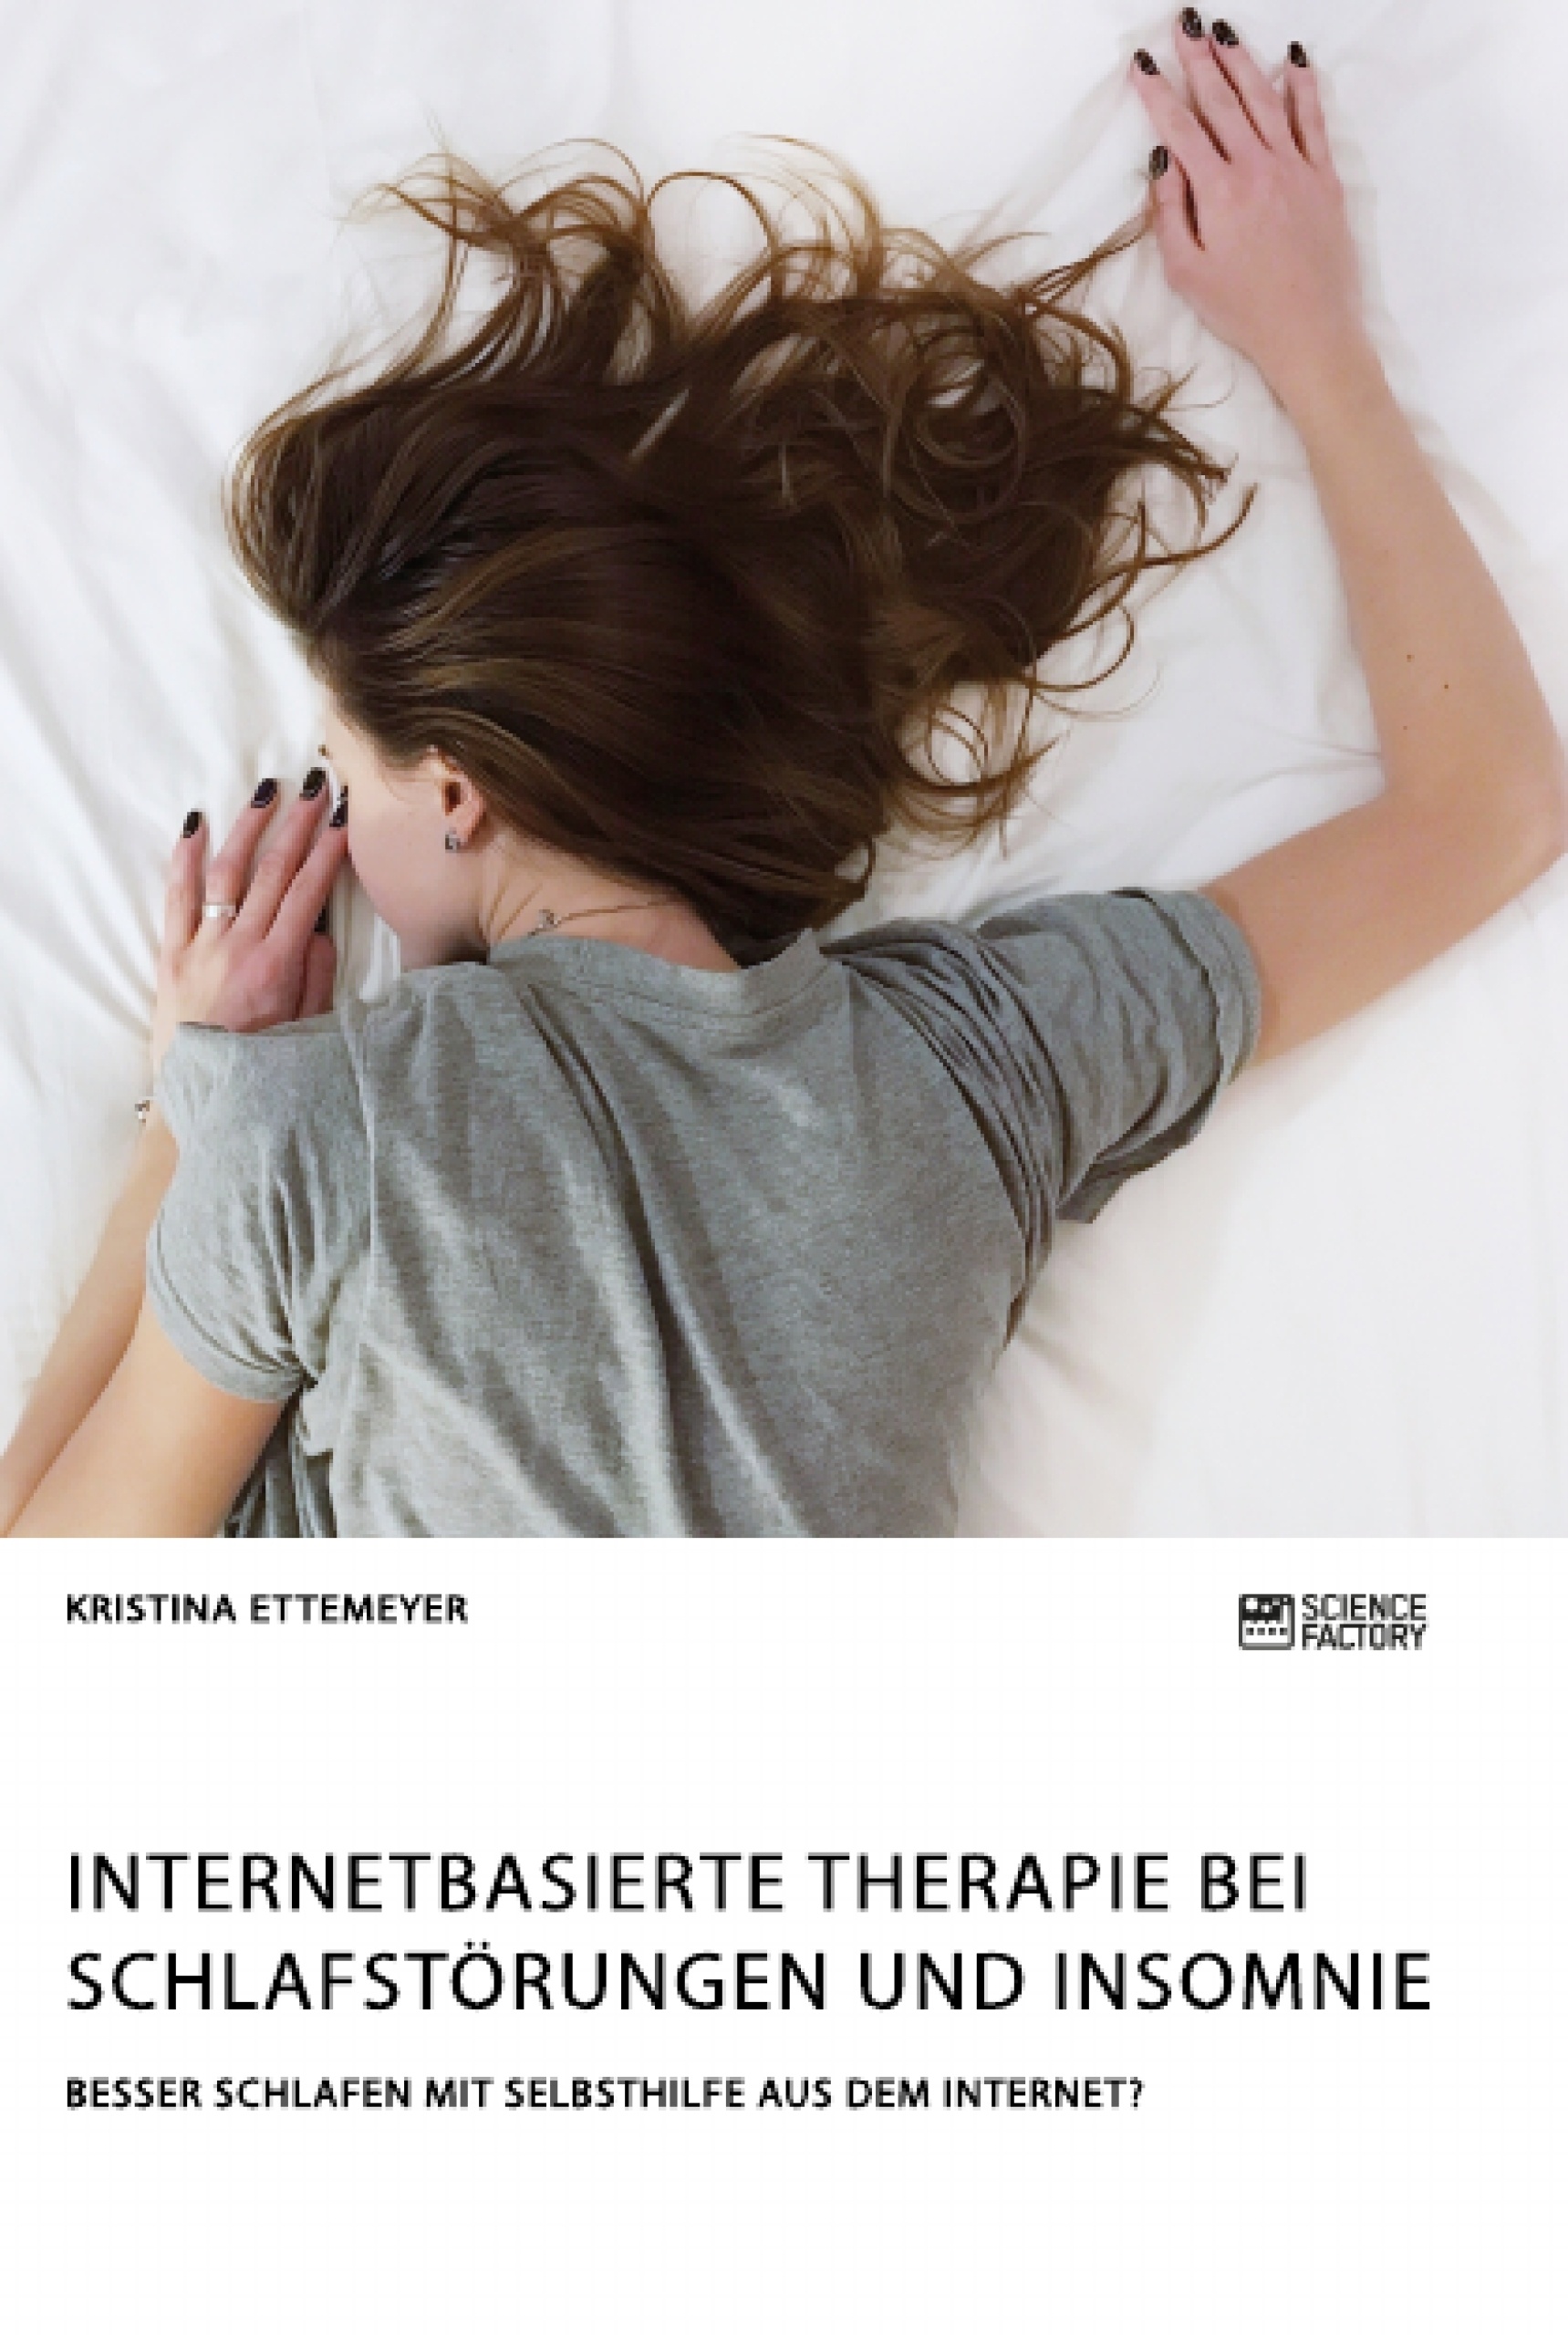 Title: Internetbasierte Therapie bei Schlafstörungen und Insomnie. Besser schlafen mit Selbsthilfe aus dem Internet?